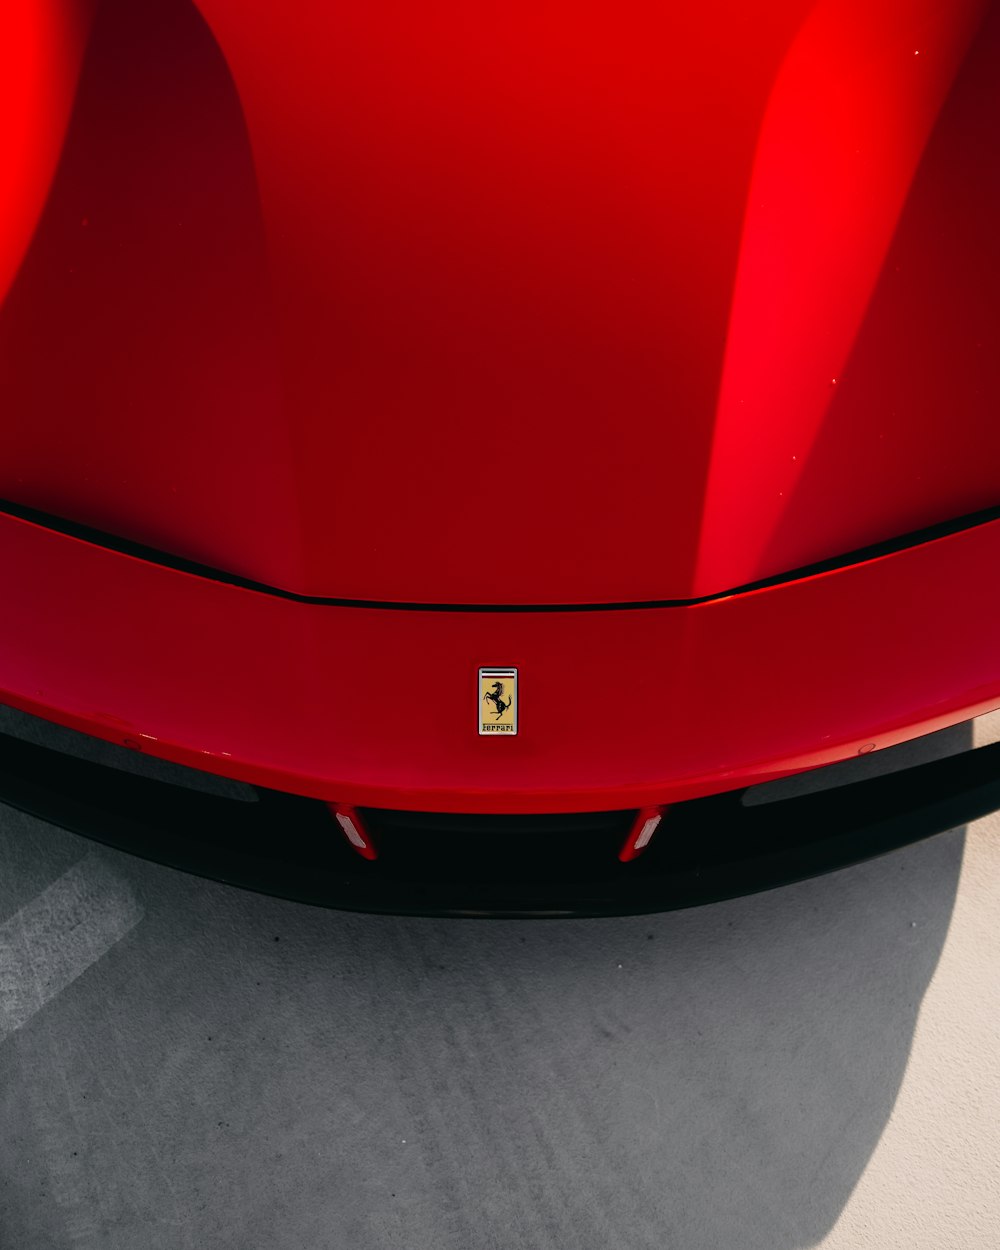 Voiture Ferrari rouge sur sol en béton gris